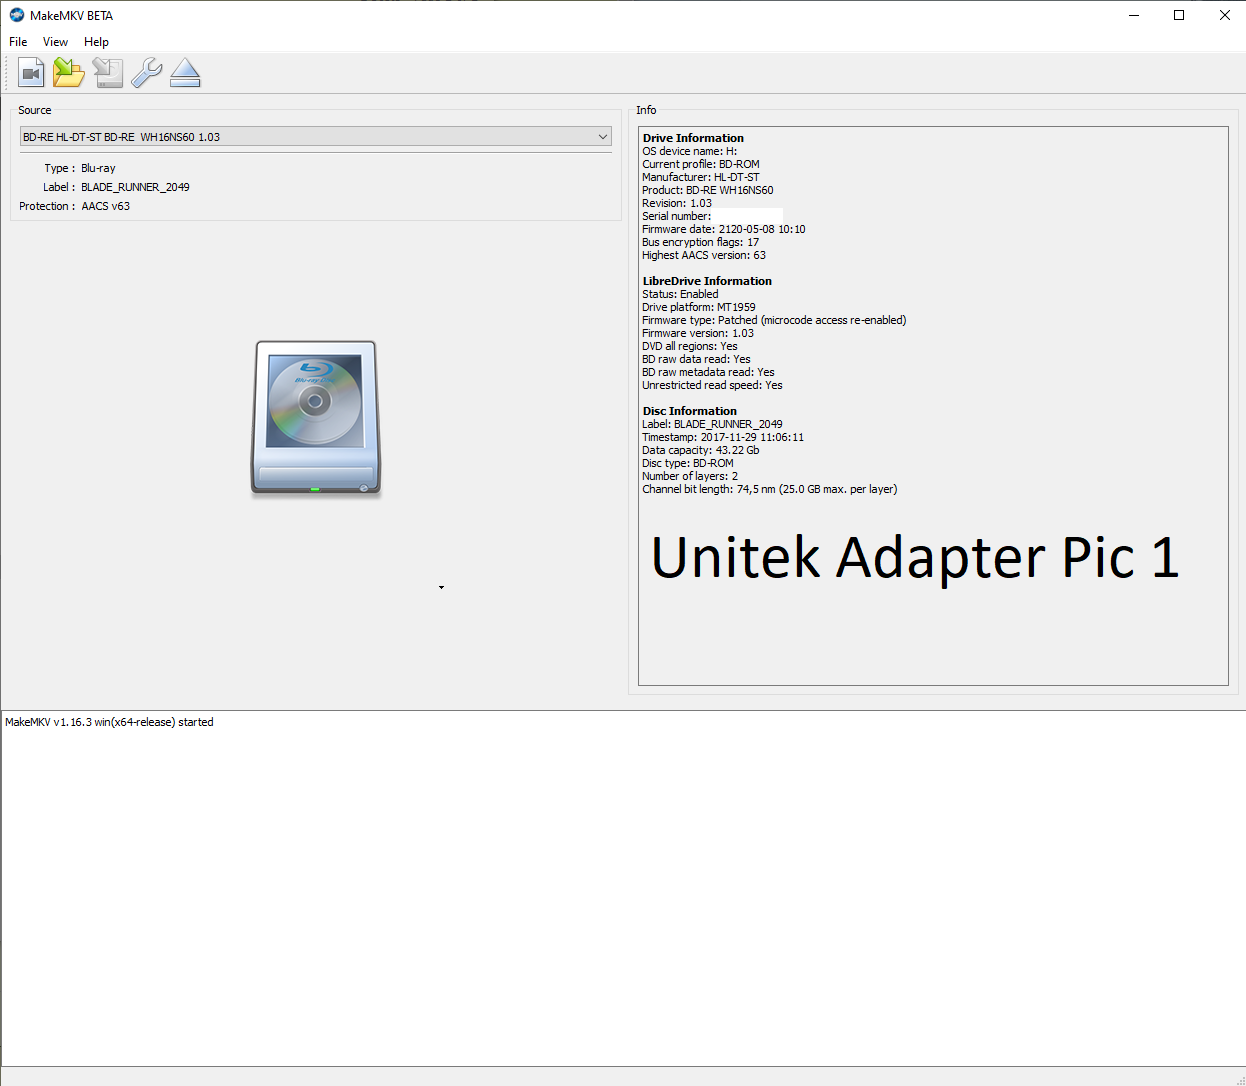 Unitek Adapter Pic 1